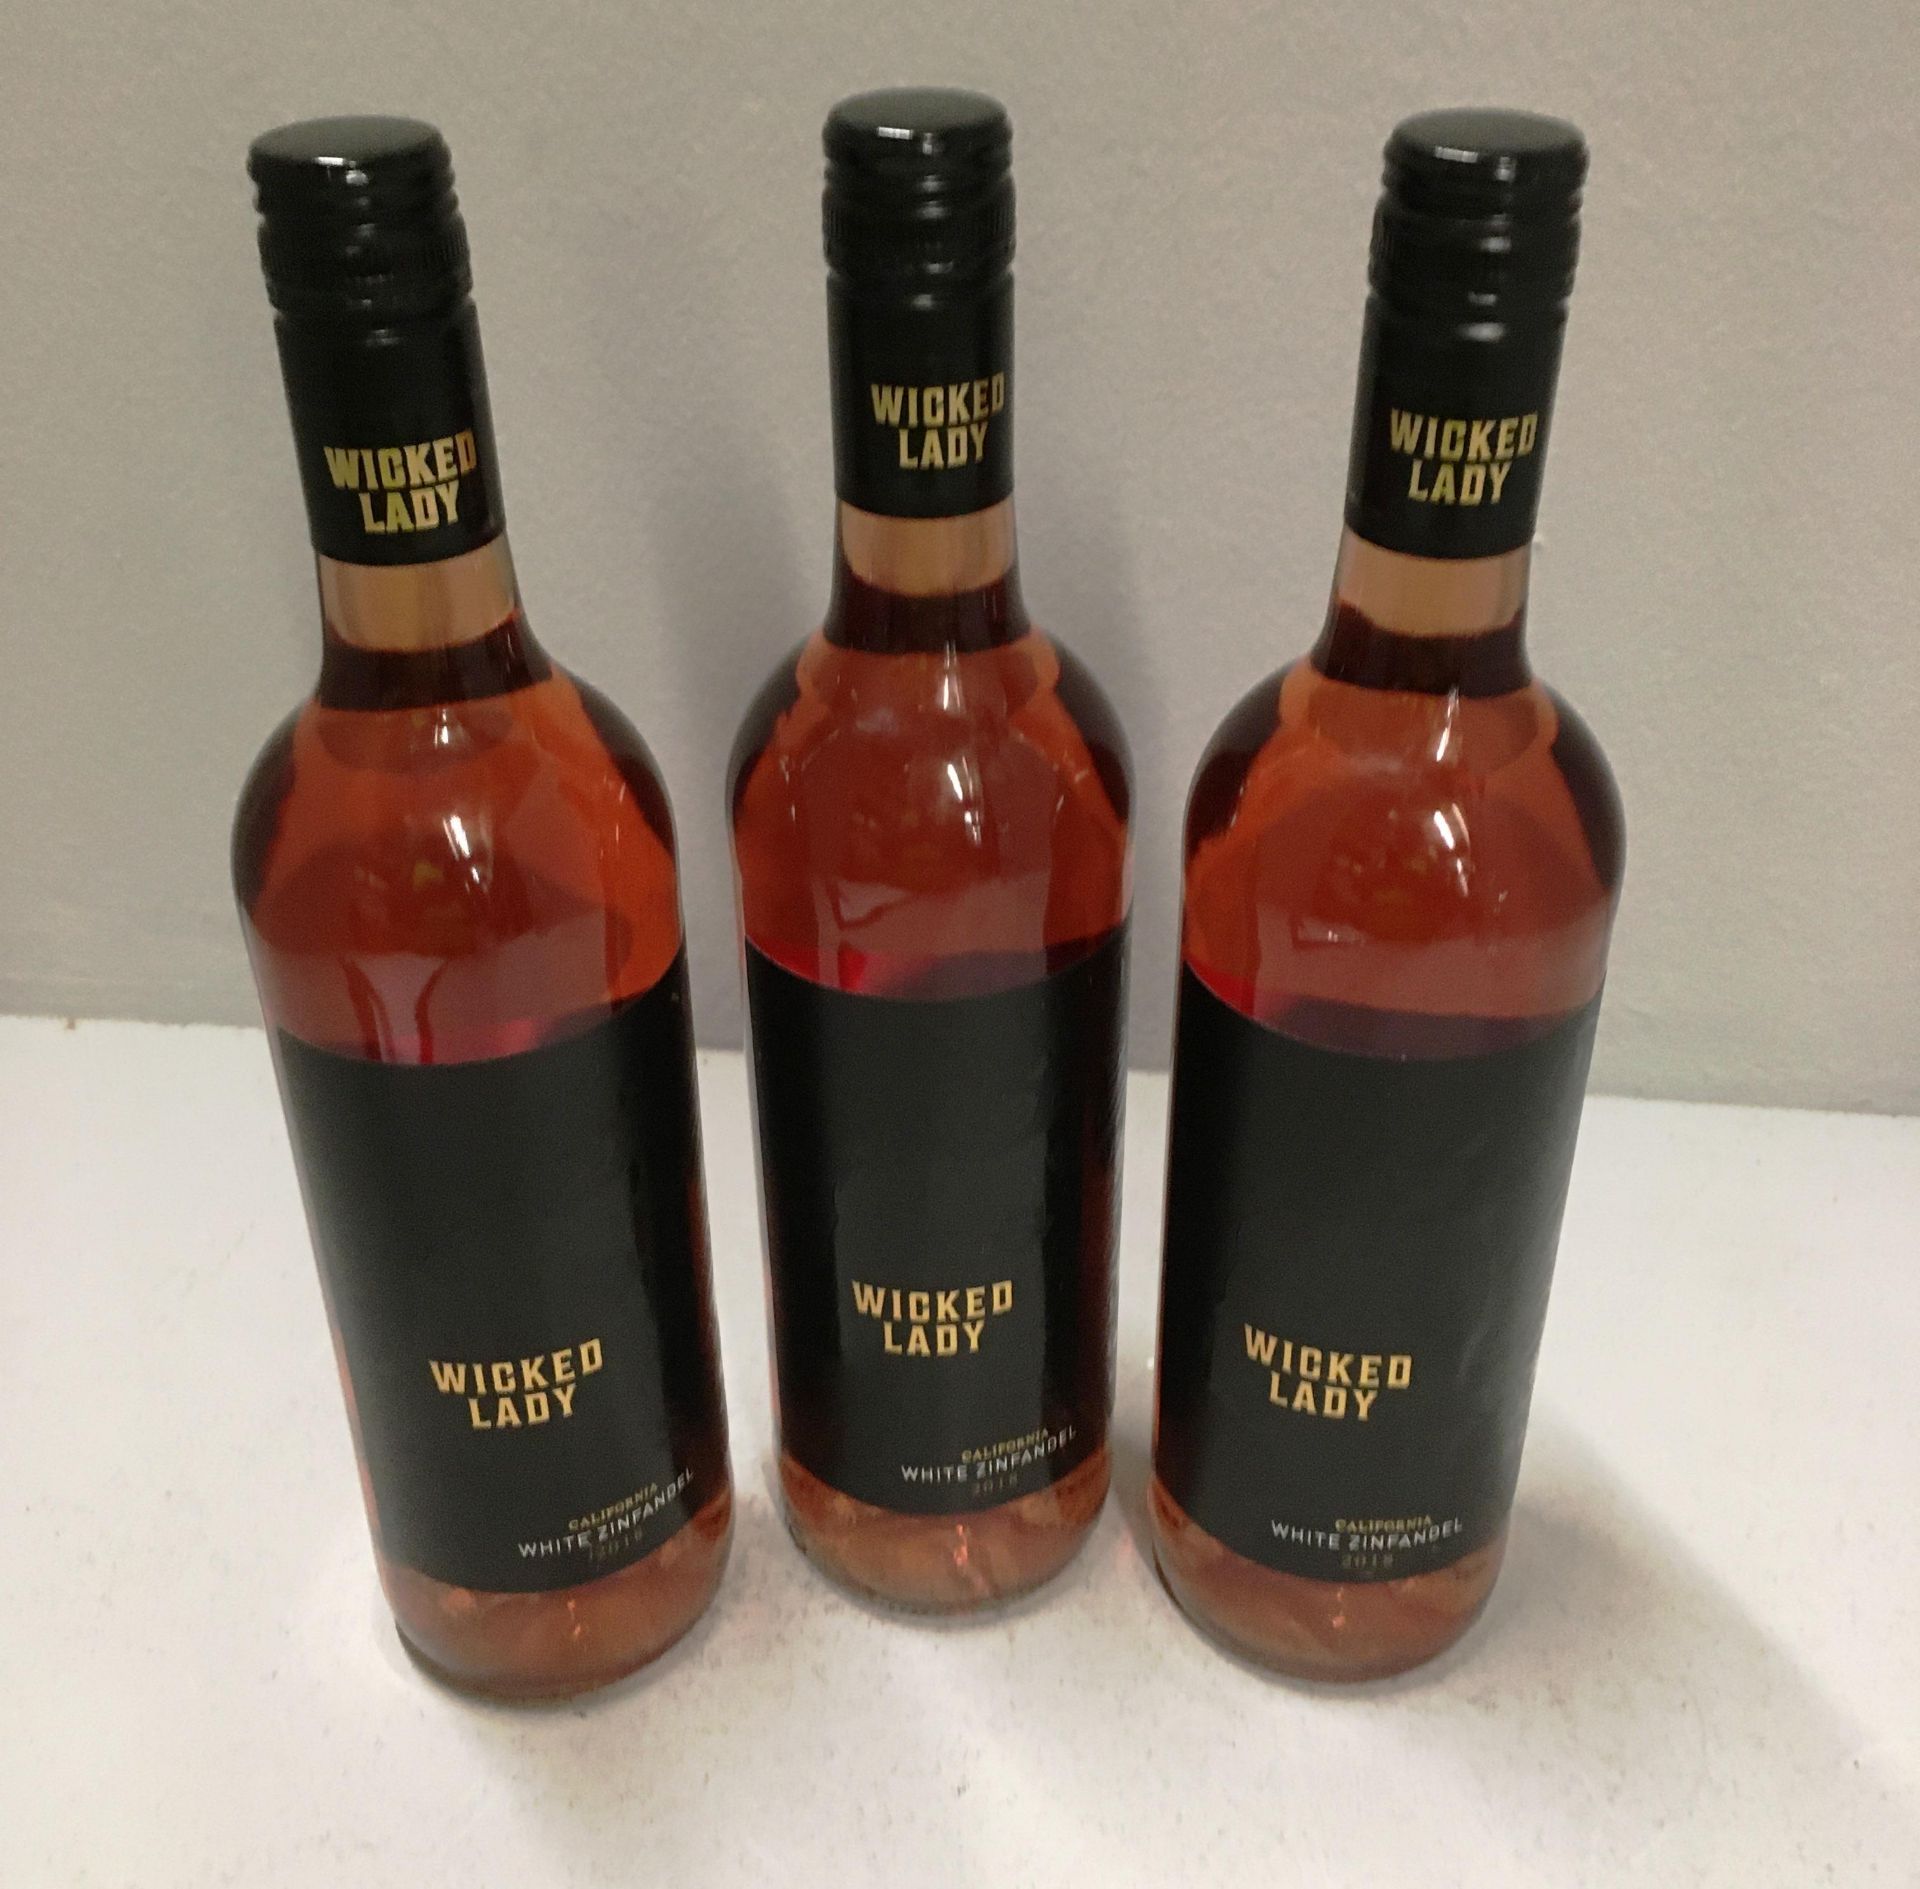 6 x 750ml bottles of Wicked Lady Californian White Zinfandel 2018 rose wine